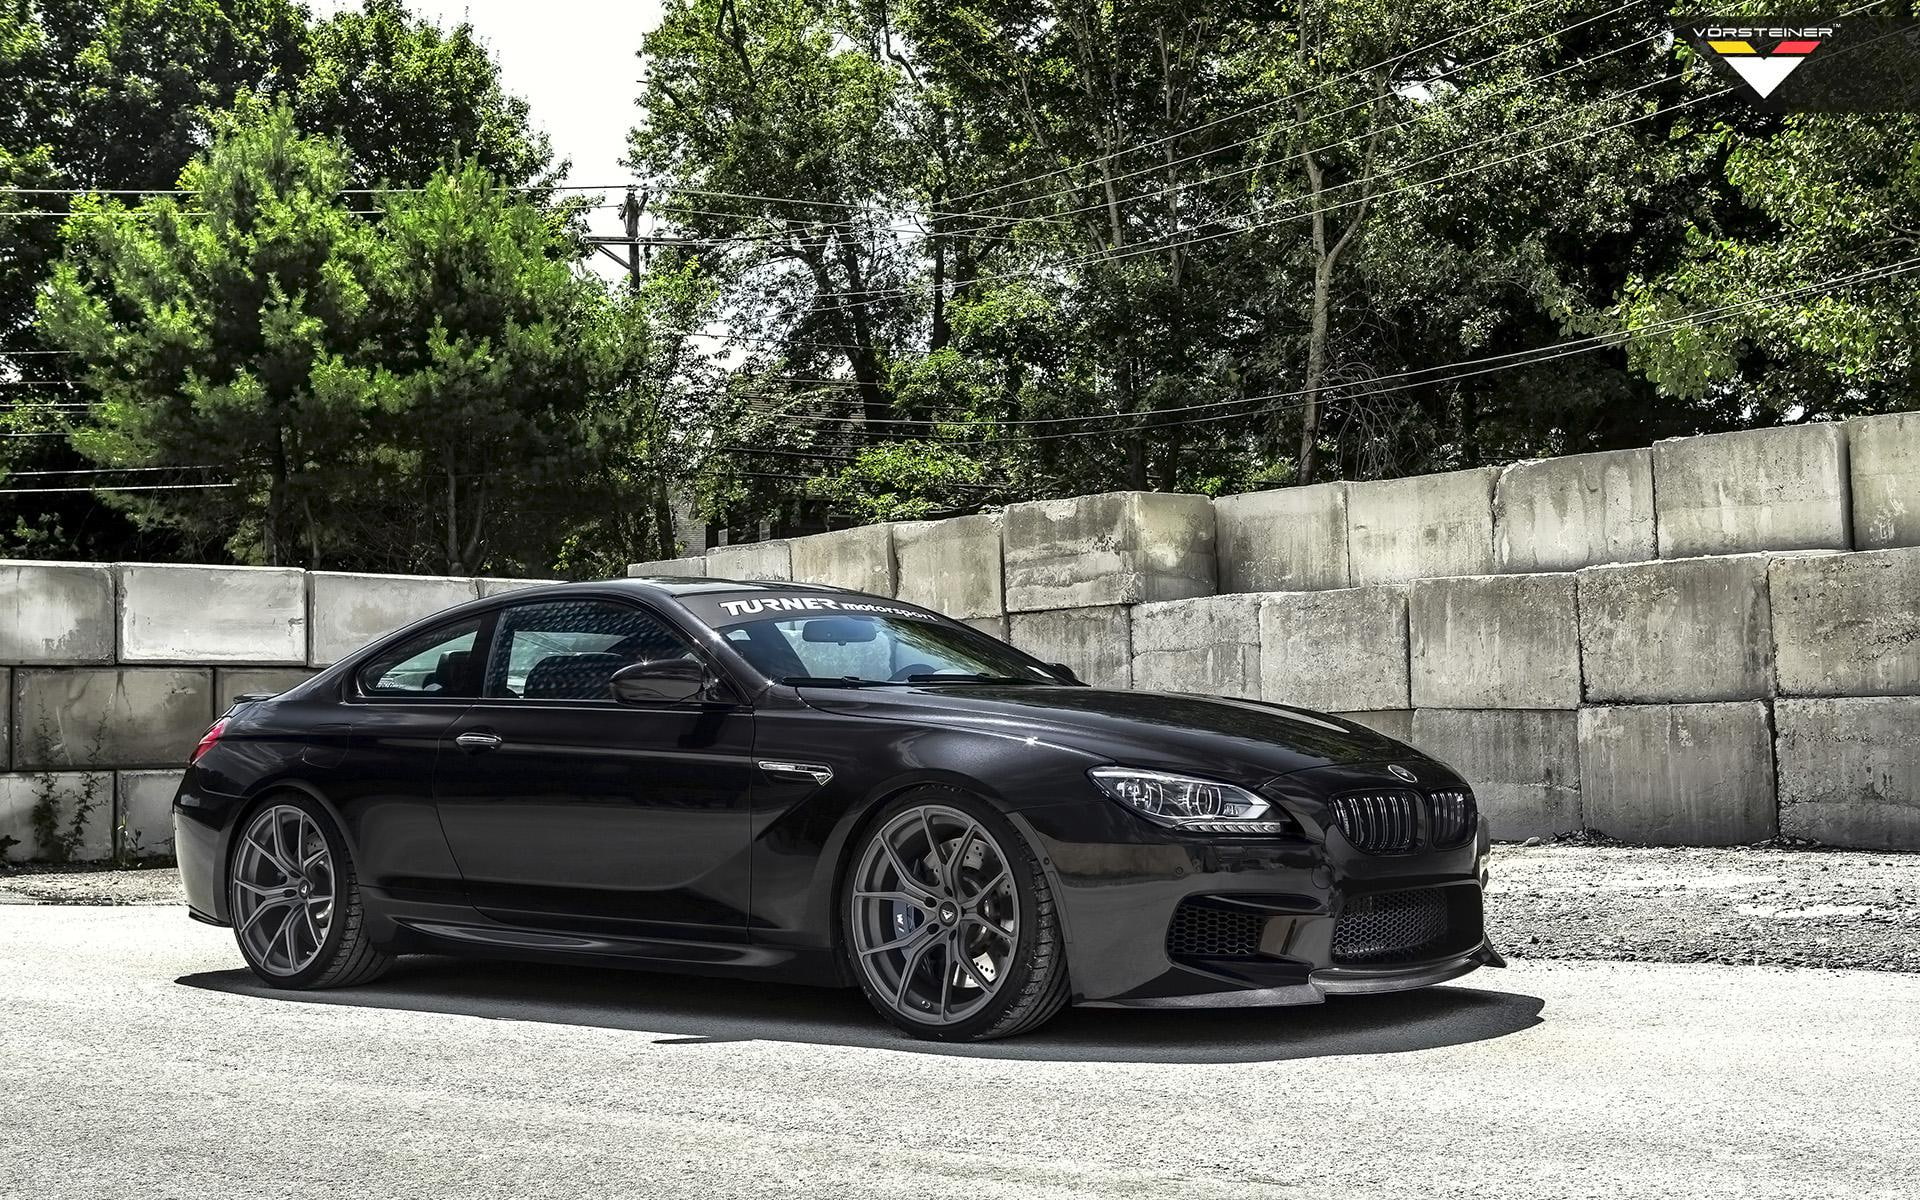 2014 Vorsteiner BMW M6 Black Sapphire, black coupe, cars